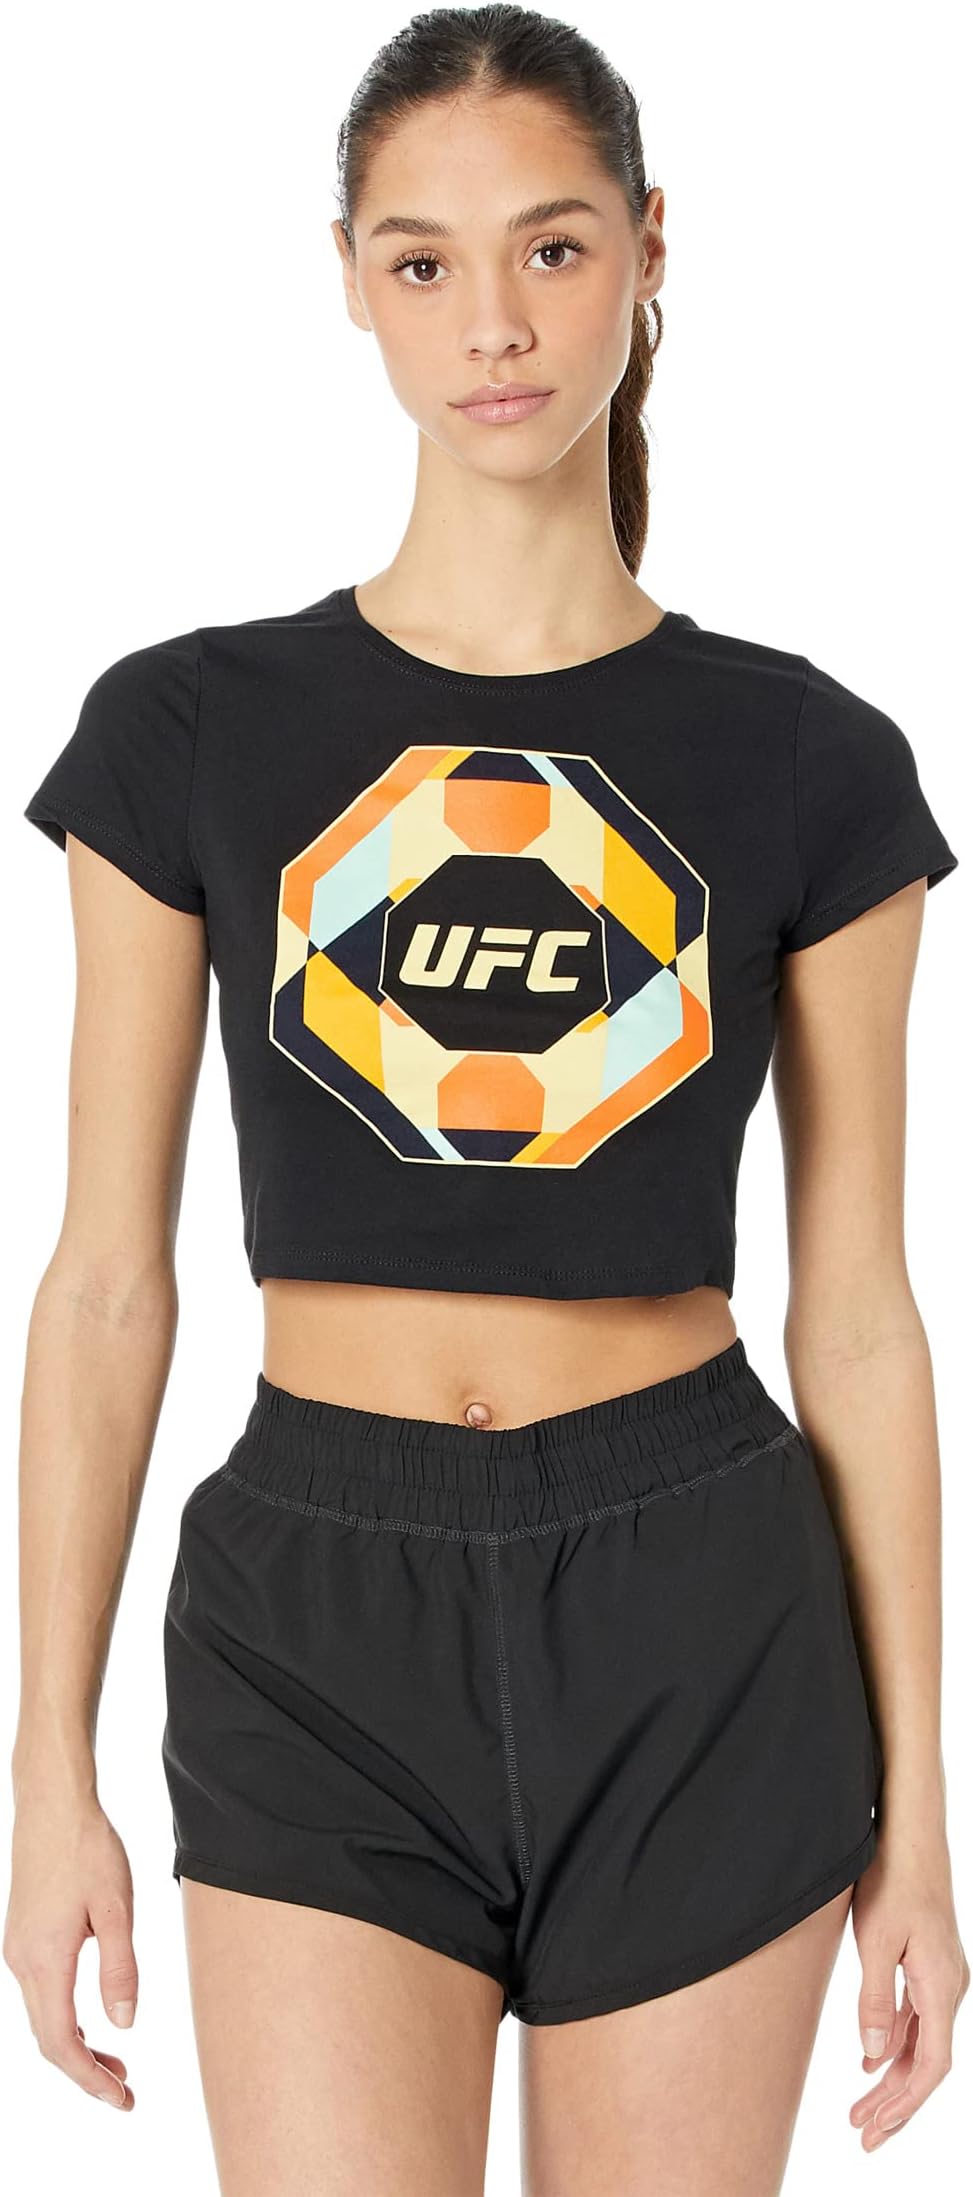 Оптическая укороченная футболка UFC, черный